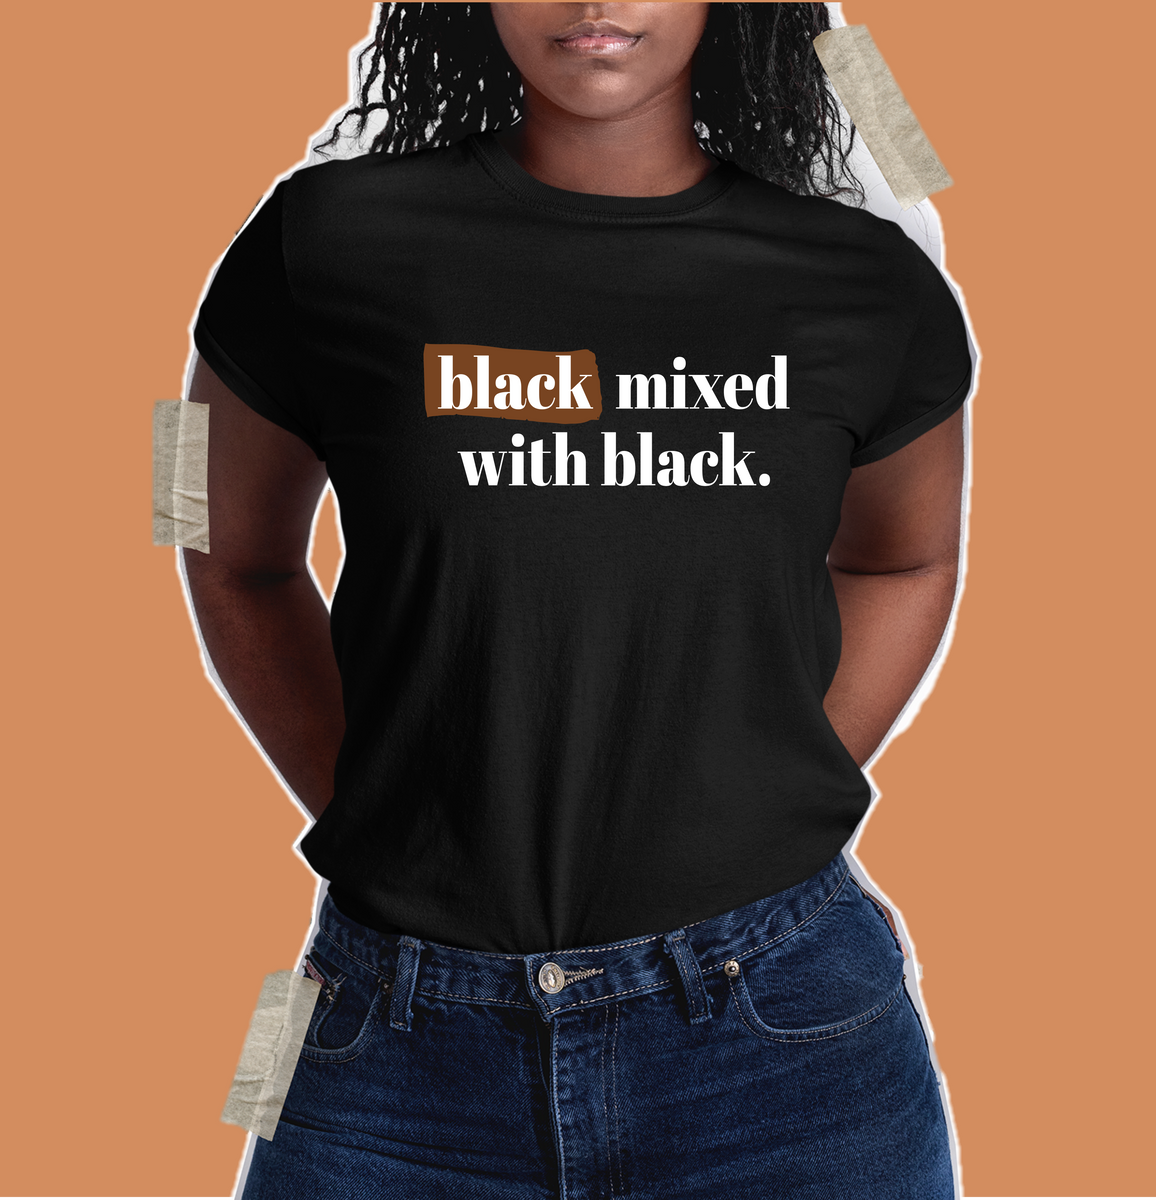 Black Mixed with Black Shirt - Unisex – My Black Clothing